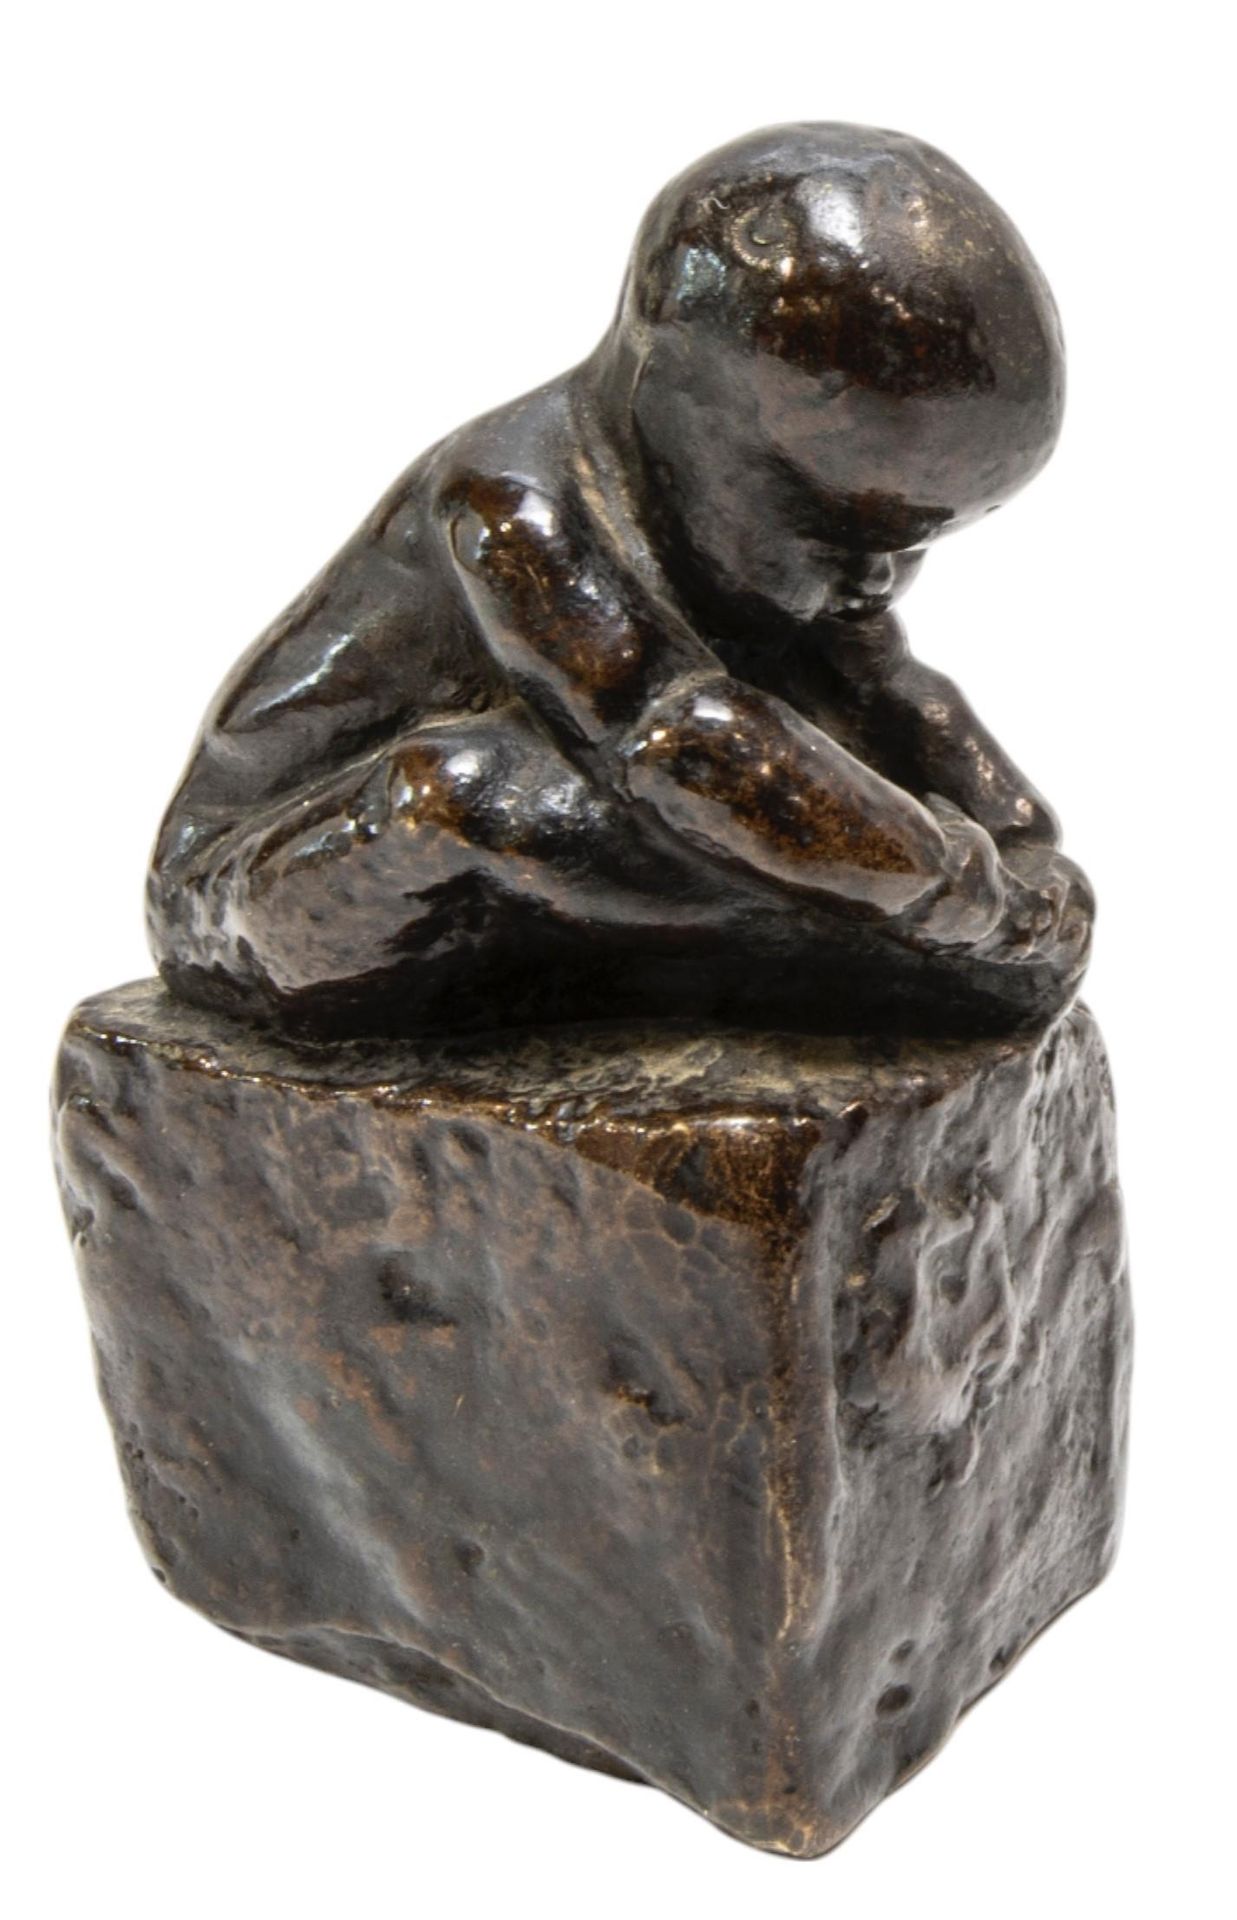 Null 一个抱着脚的铸铜婴儿雕像，坐在一个长方形基座上，上面有模糊不清的签名和编号 "No.1" 高 12 厘米